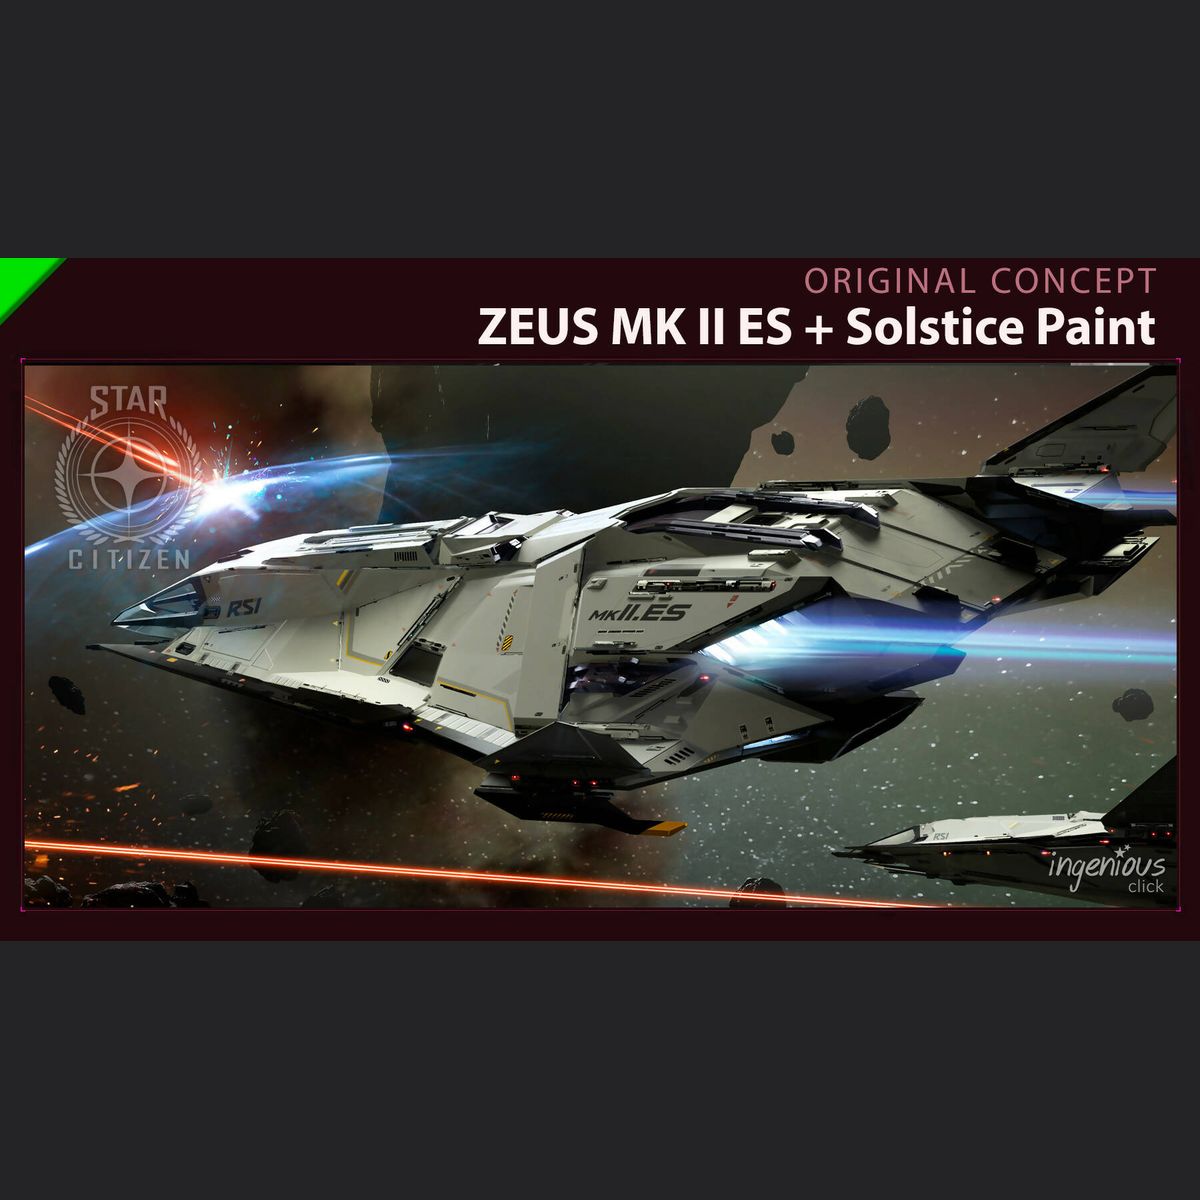 ZEUS MK II ES with Solstice Paint - Original Concept